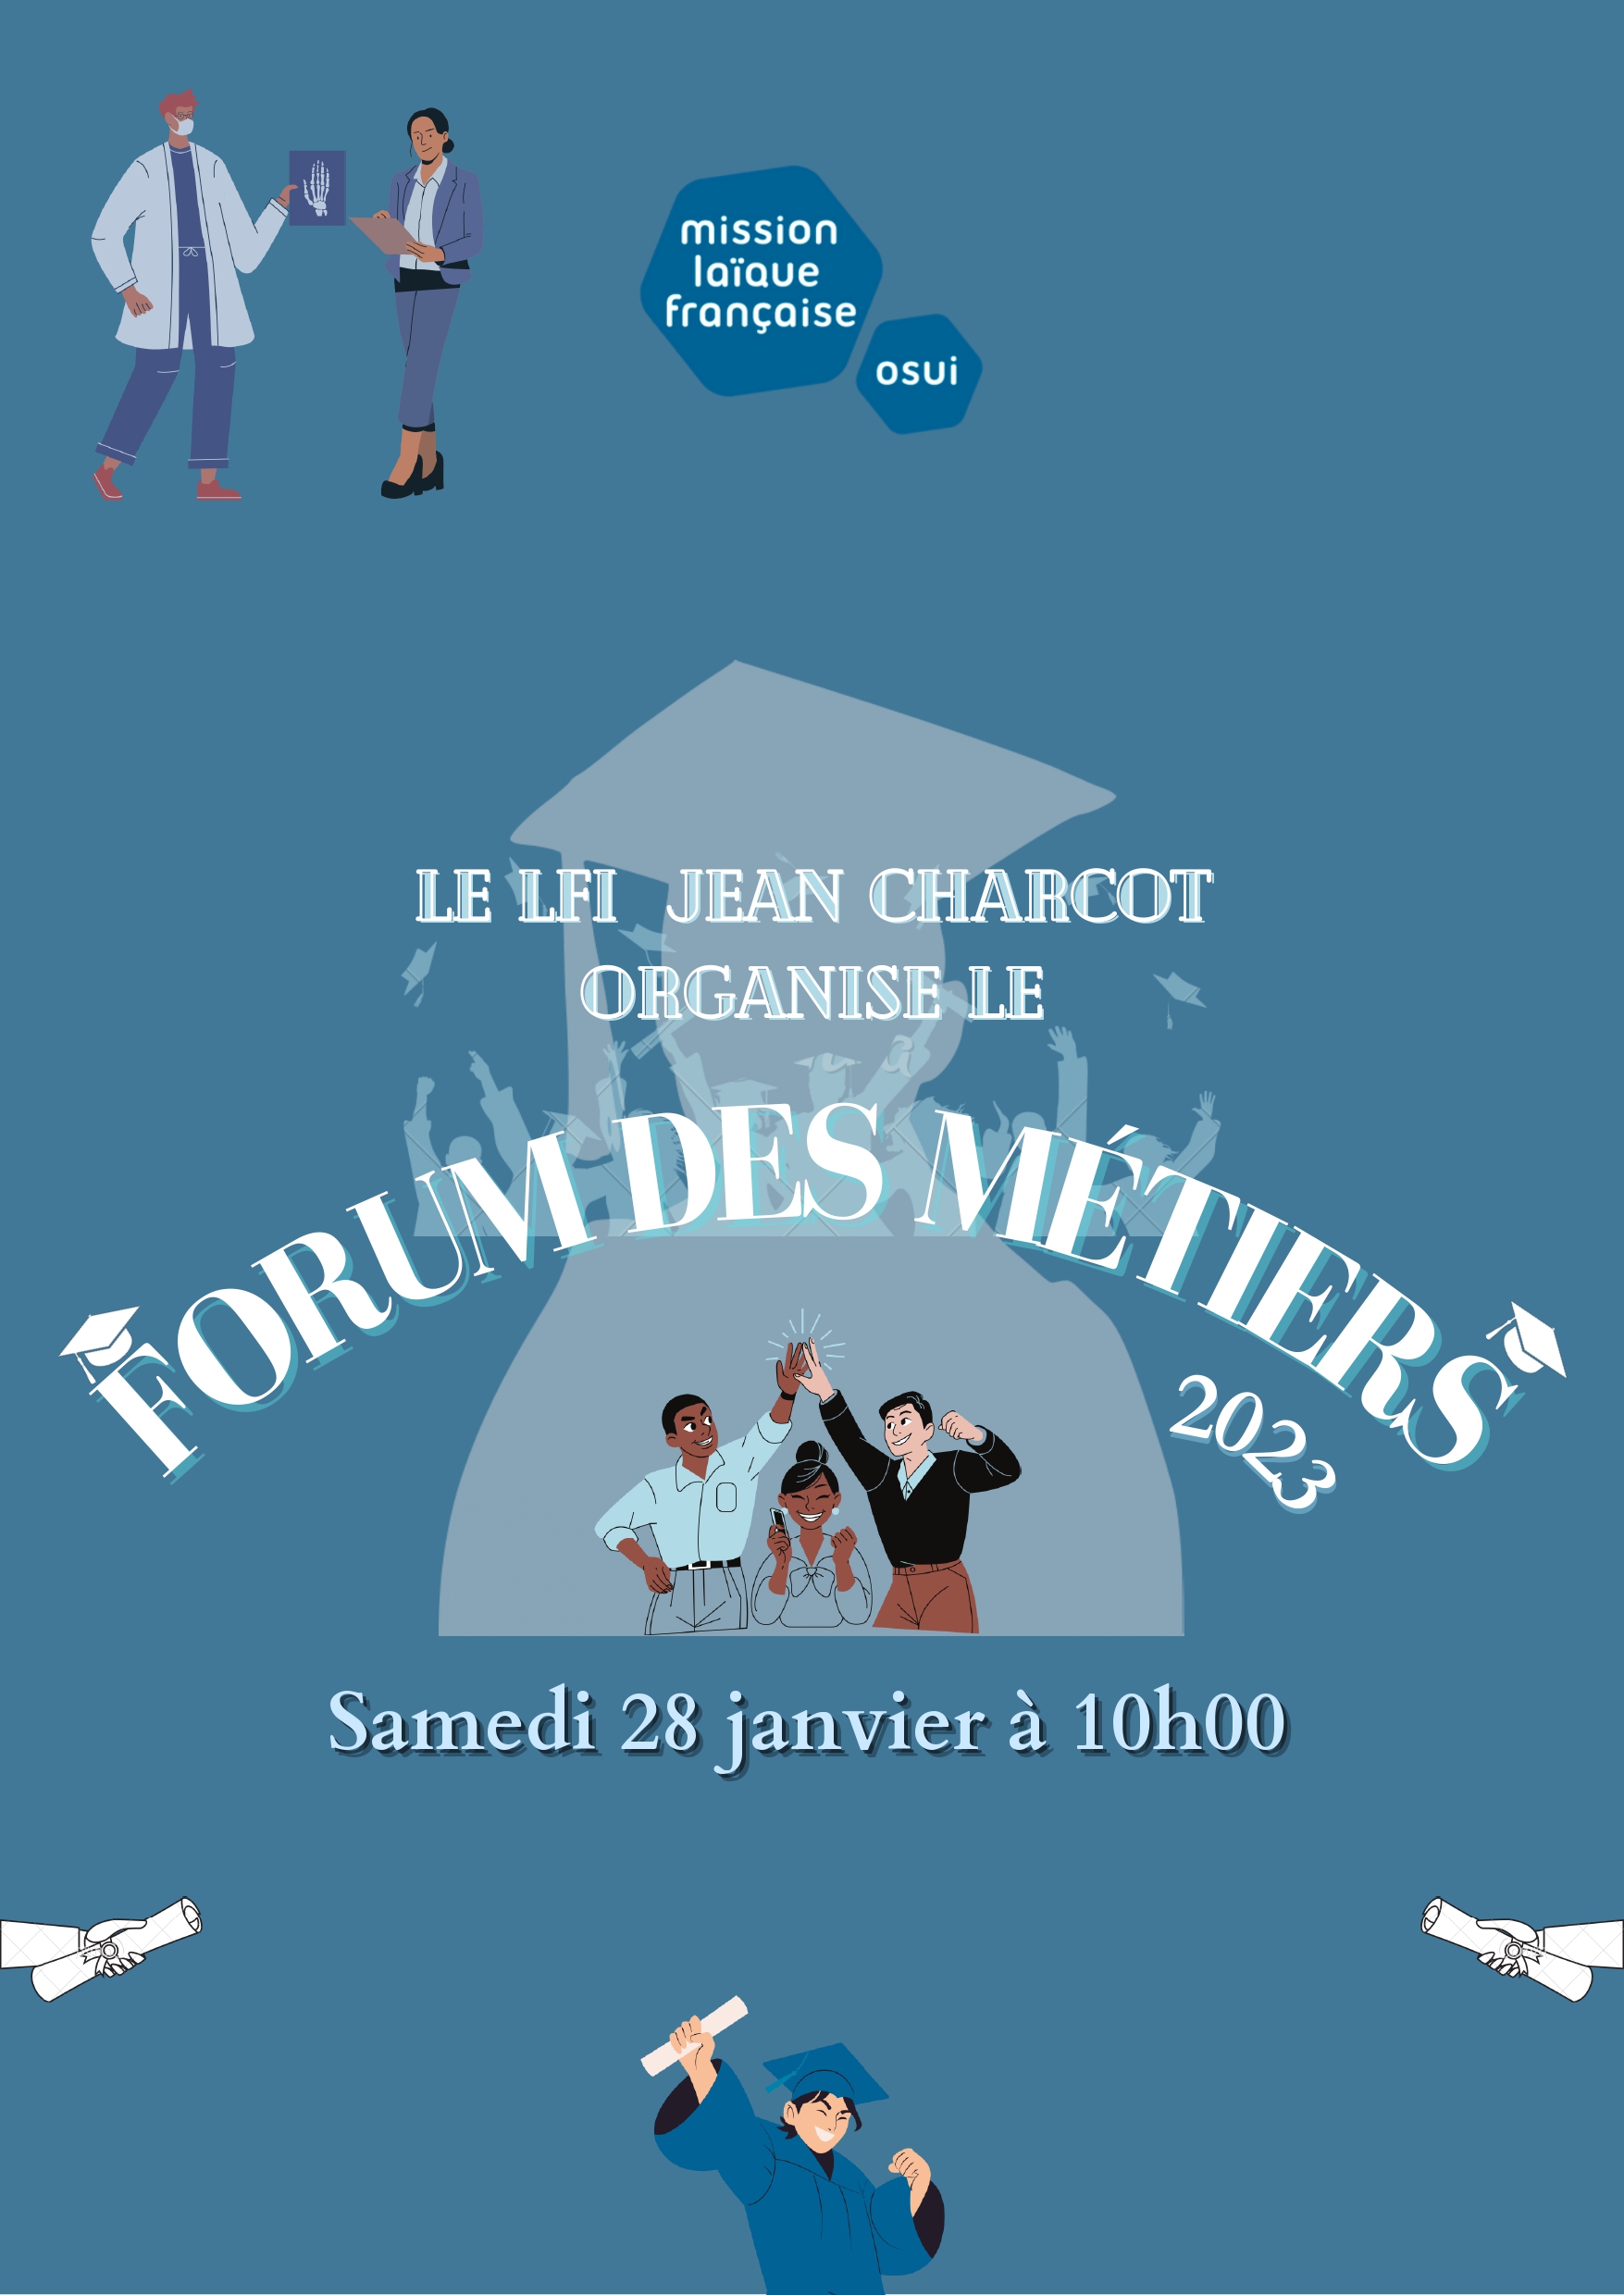 La 11ème édition du Forum des métiers au LFI Jean Charcot